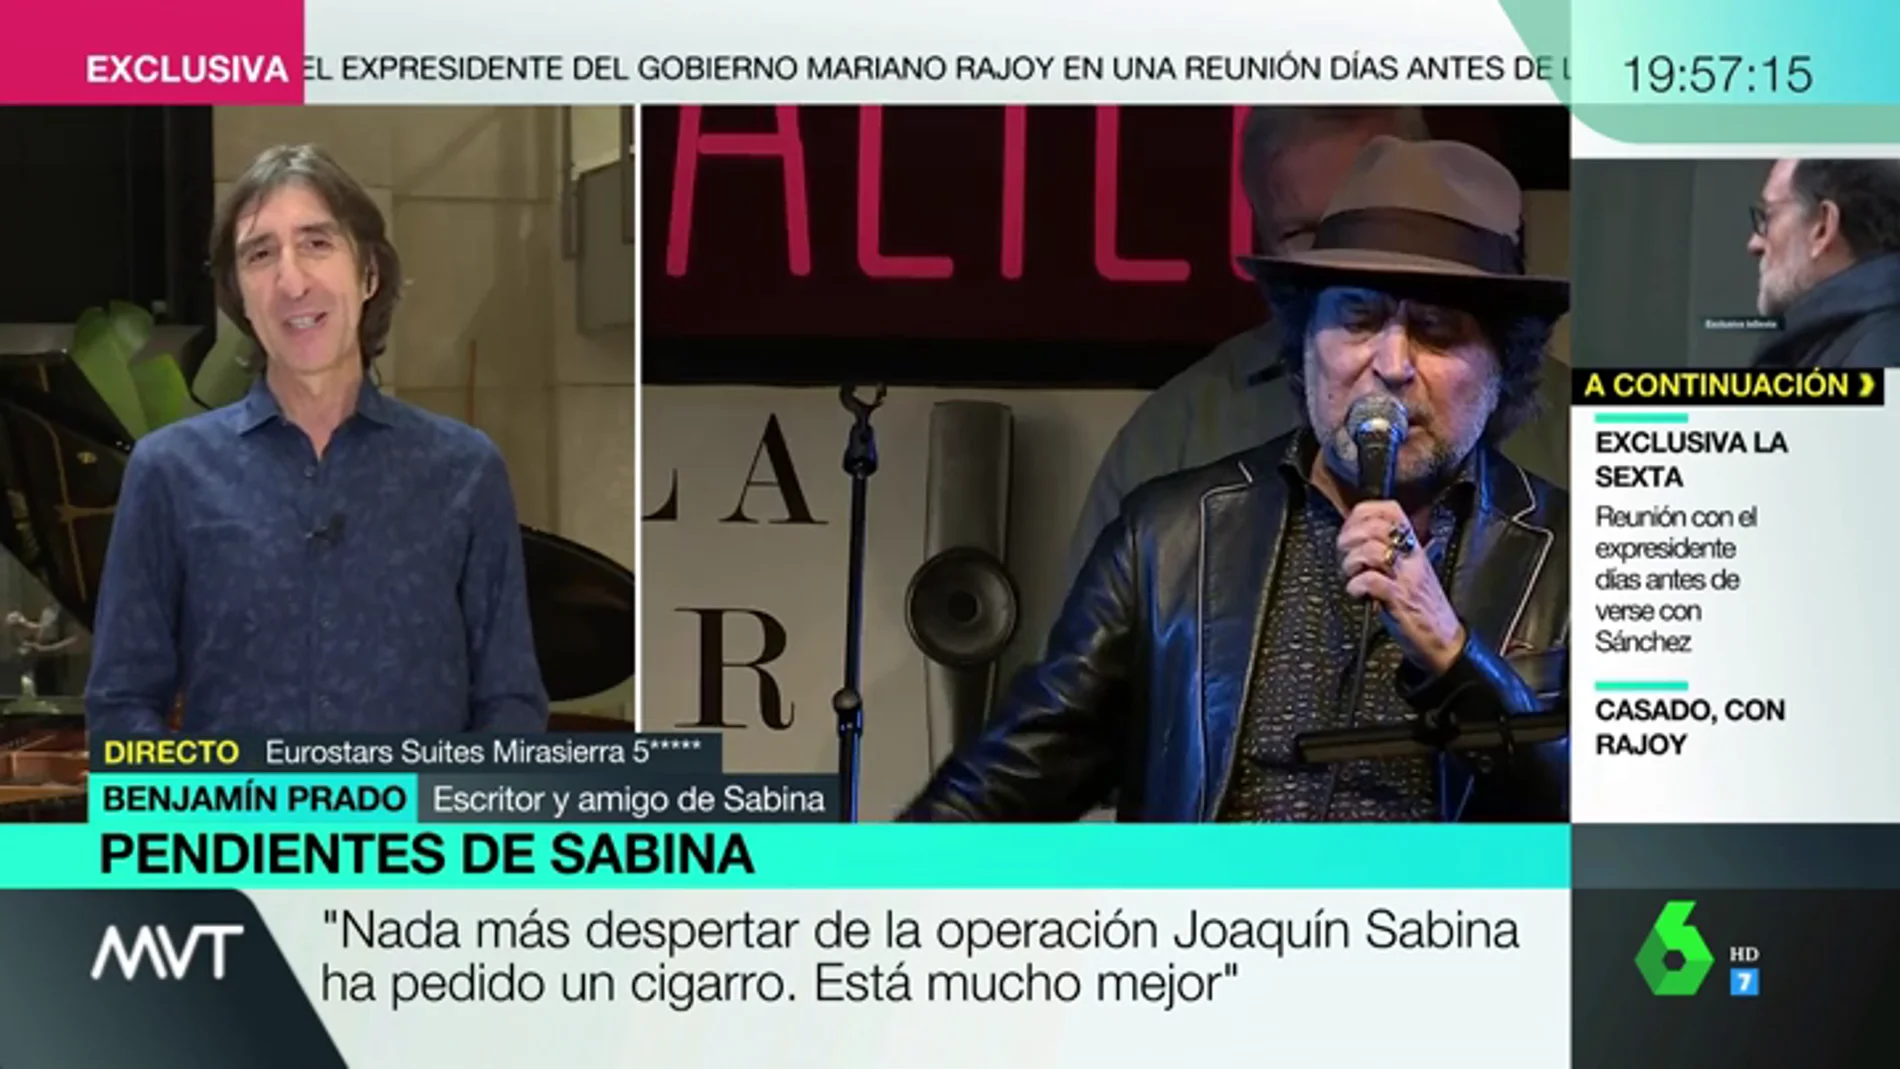 "Pedir un cigarrito": esto es lo primero que ha hecho Joaquín Sabina tras despertar de su intervención